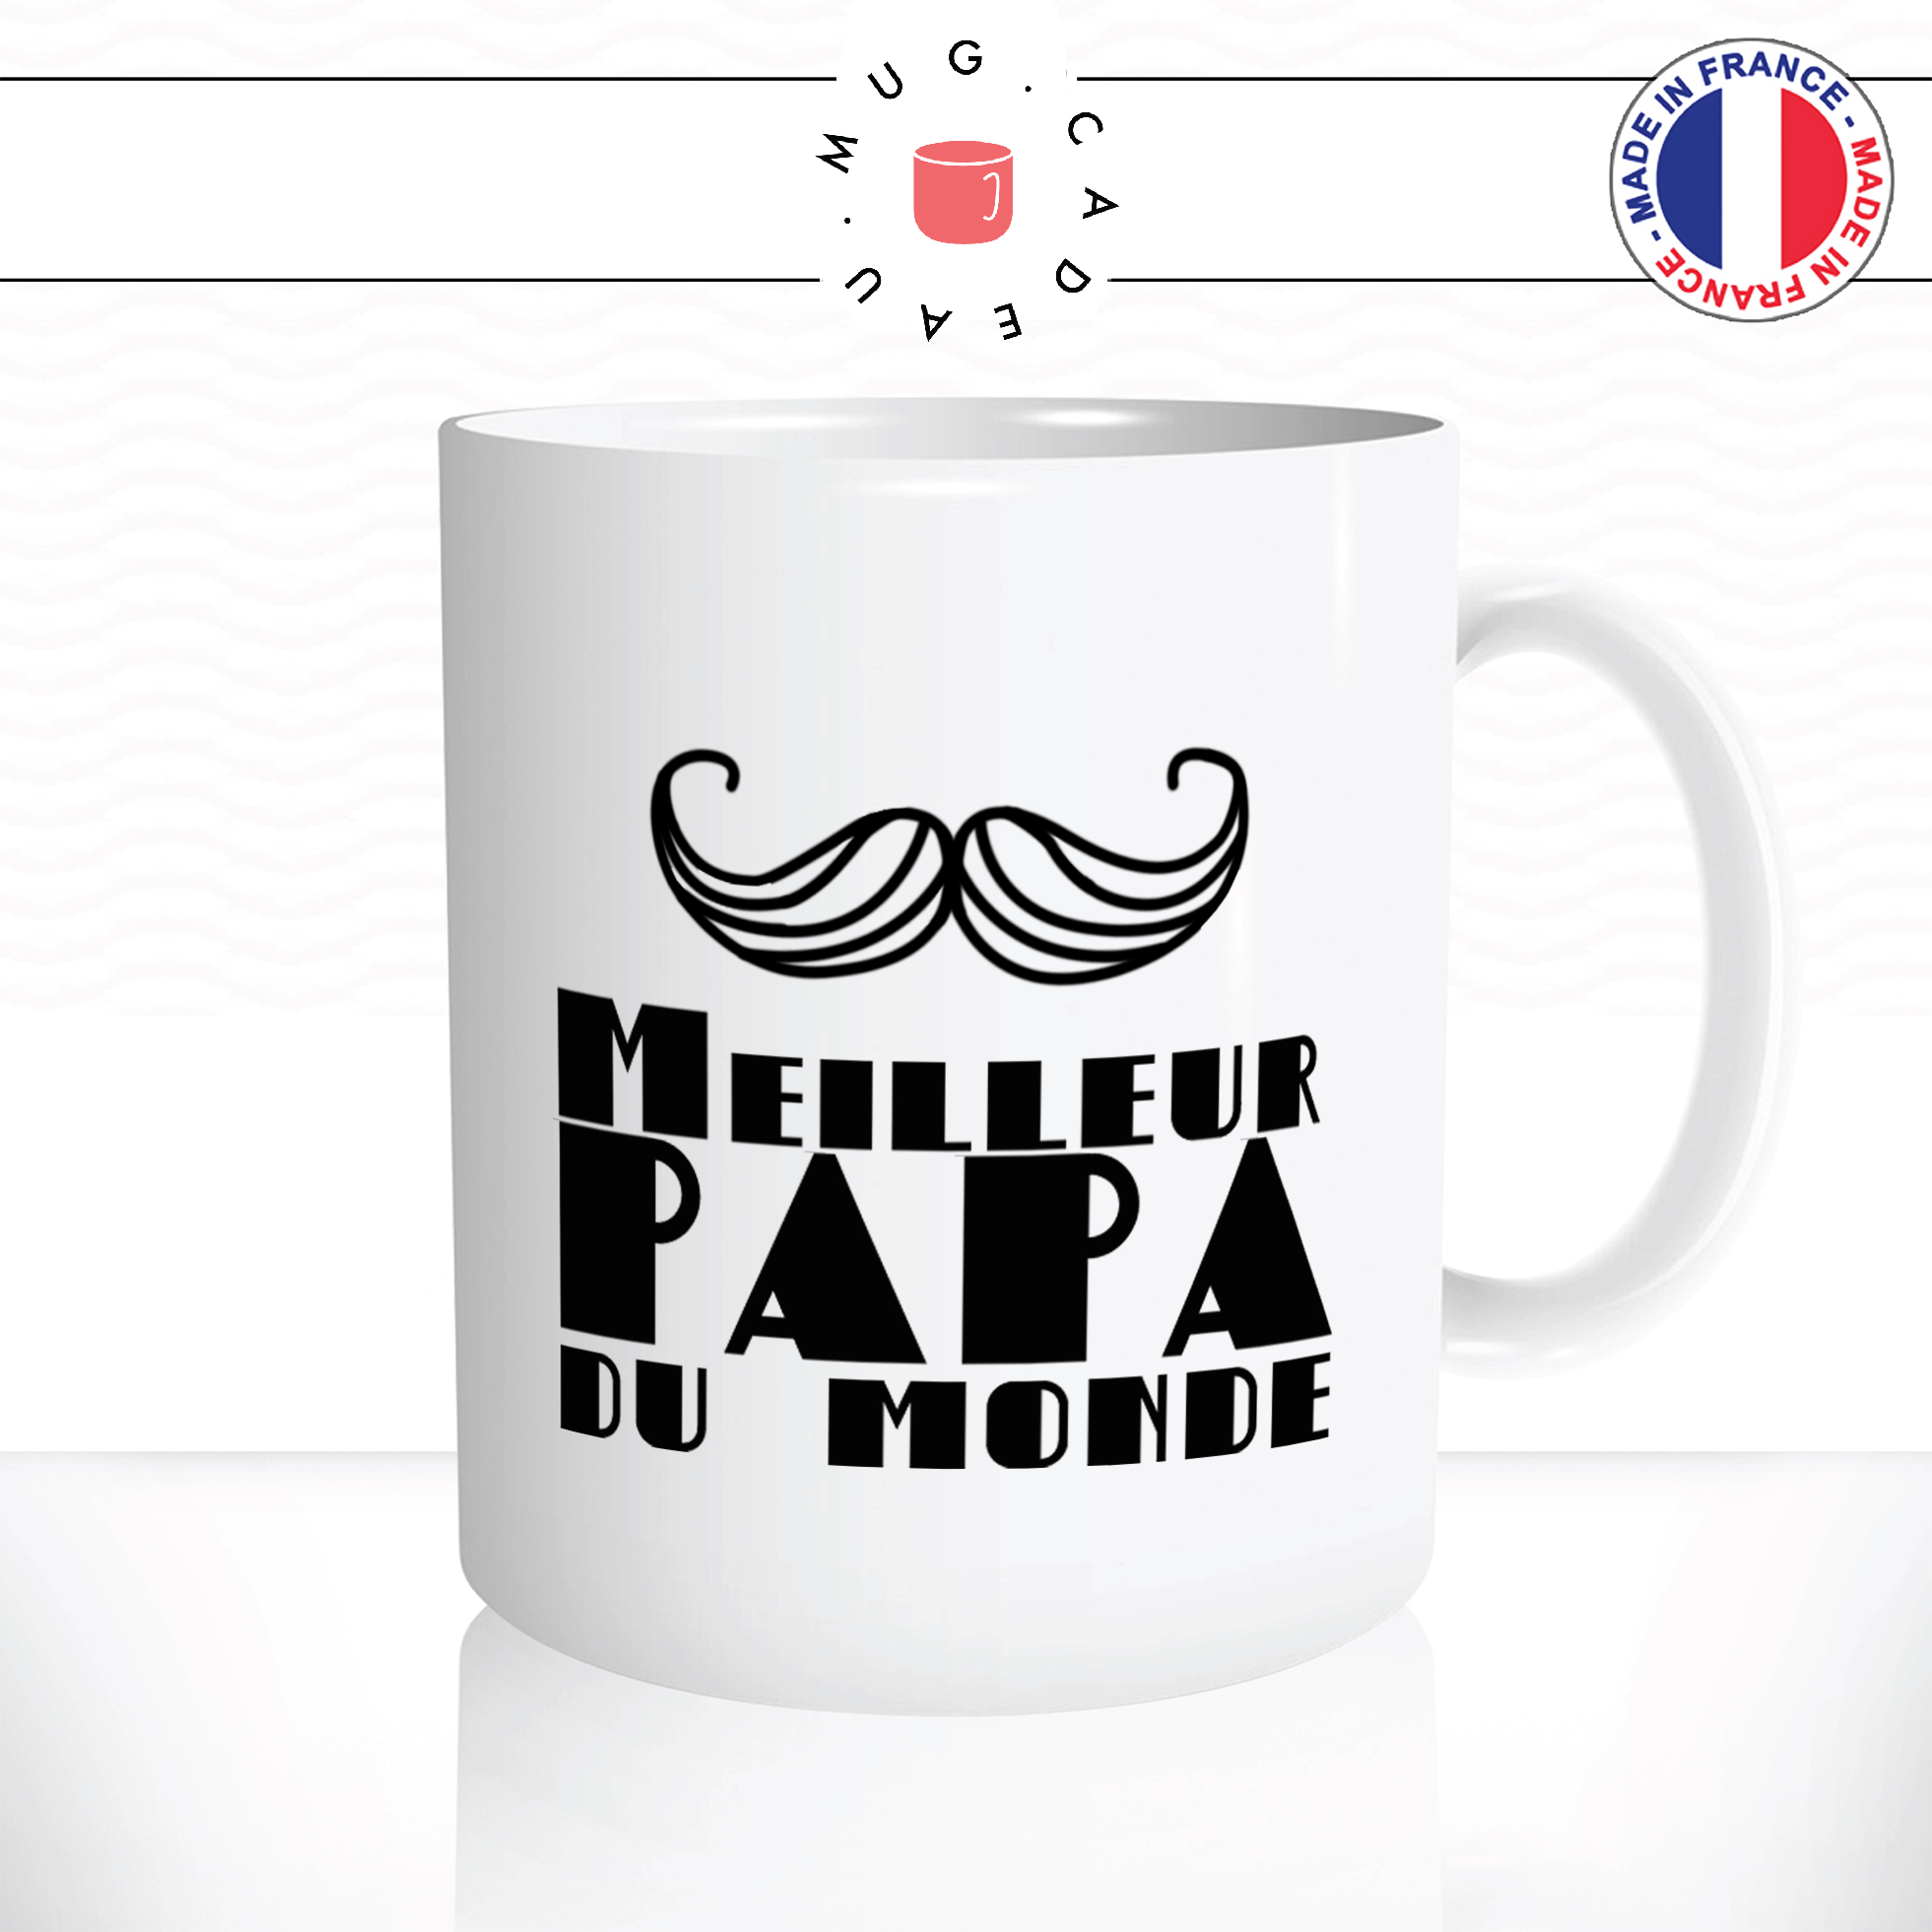 mug-tasse-ref1-fete-des-peres-meilleur-papa-du-monde-moustache-cafe-the-mugs-tasses-personnalise-anse-droite